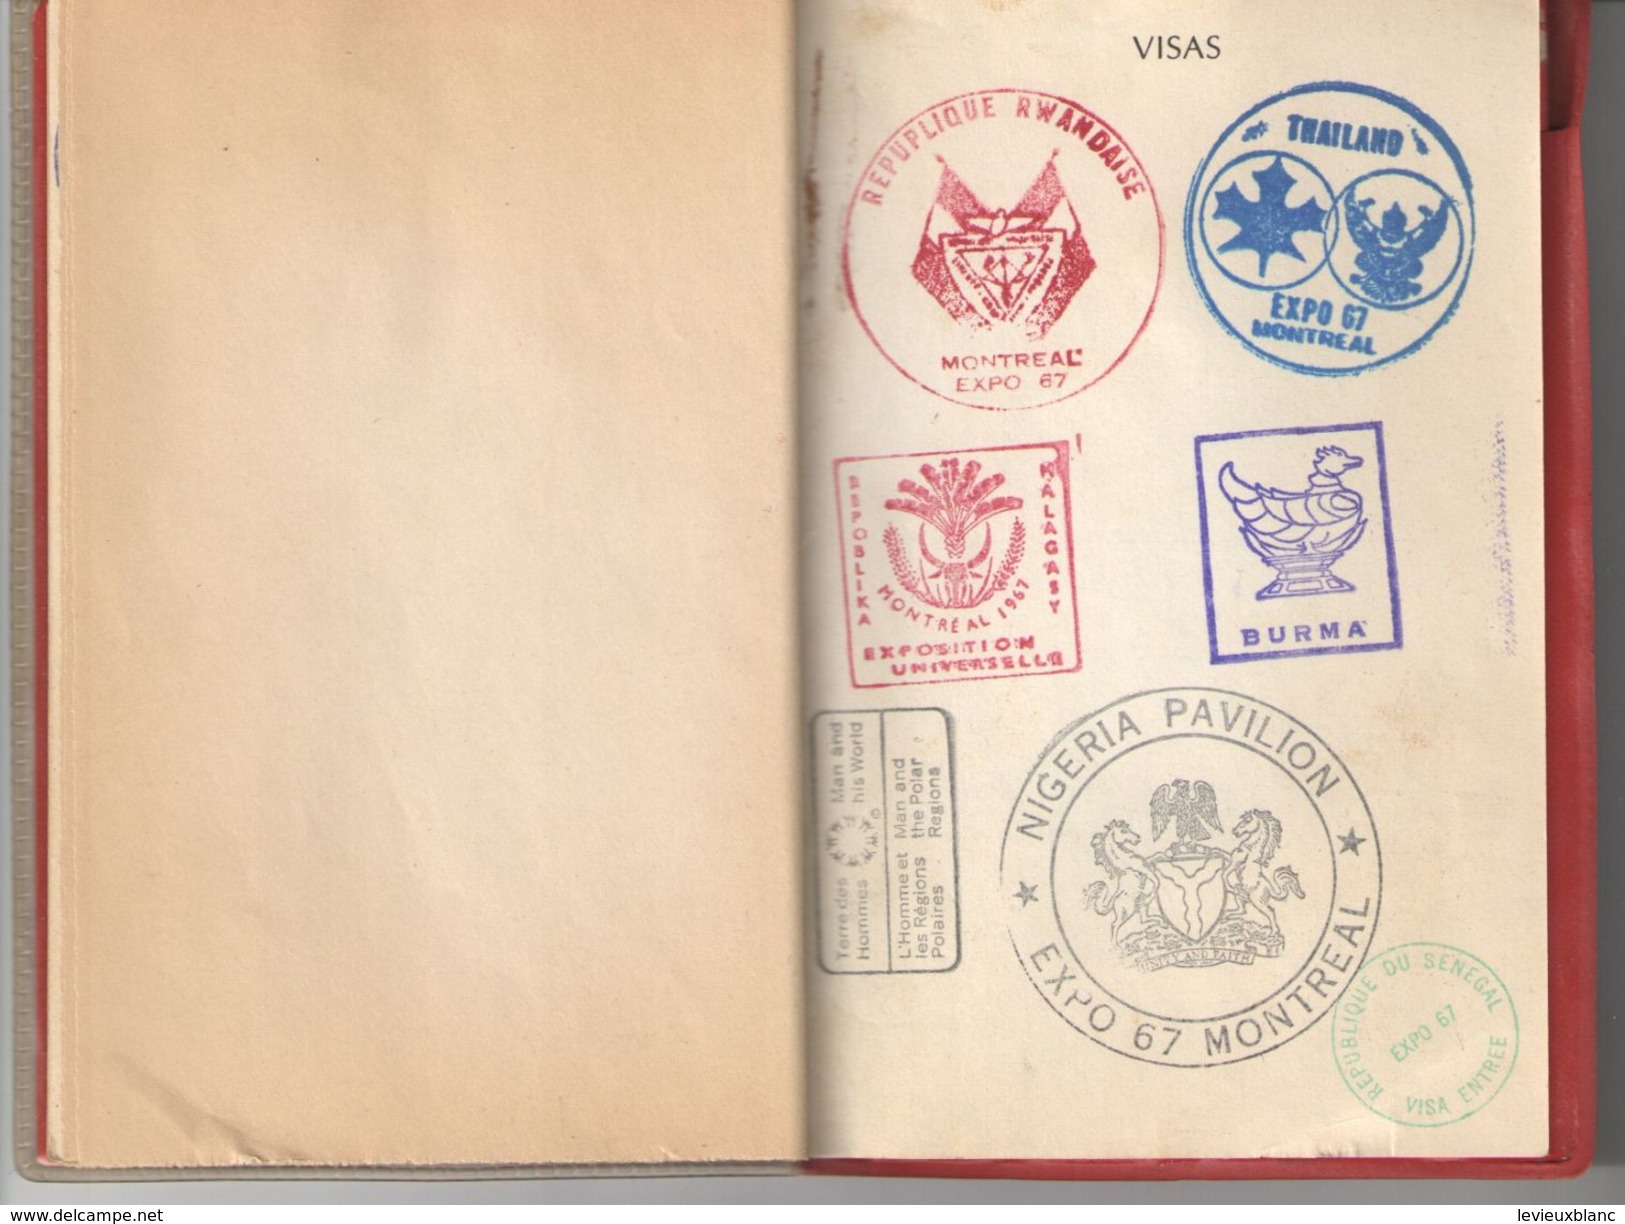 Passeport pour la terre des Hommes/EXPO67/Adulte/Georges Paulin/LAVAL/Expo Universelle de Montréal/CANADA/1967   AEC100